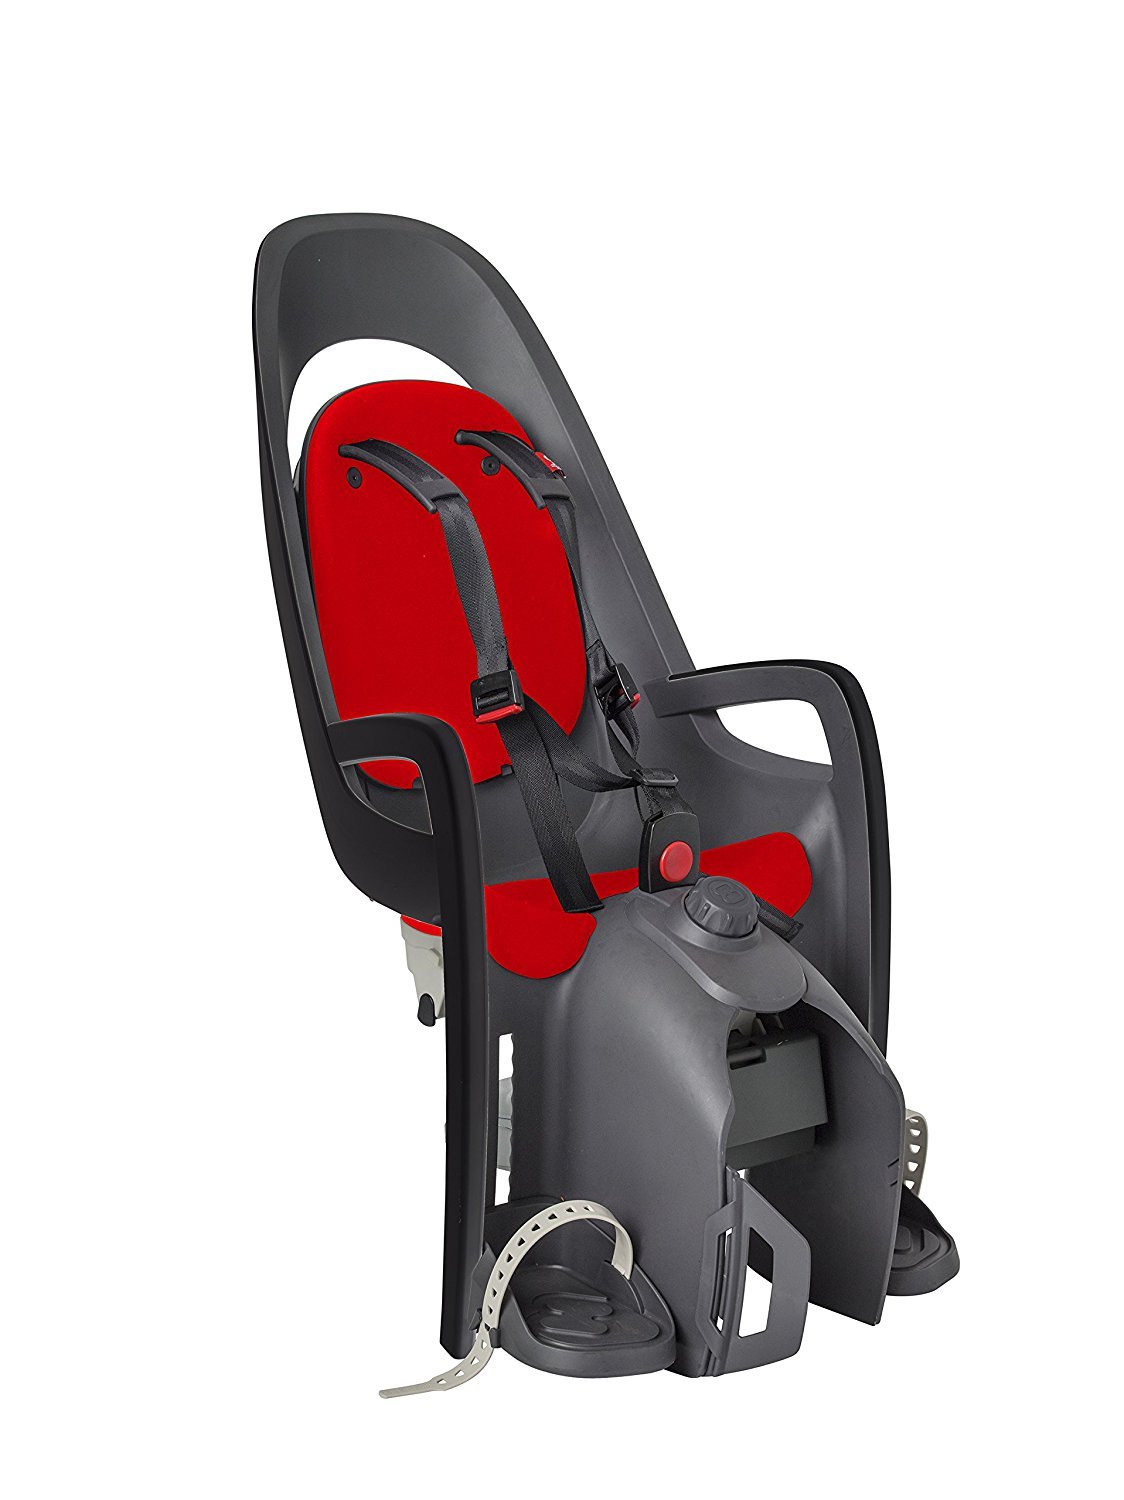 Детское велокресло HAMAX CARESS с адаптером для багажника, серый/красный, до 25 кг, 553013 детское велокресло hamax caress w carrier adapter на багажник серый белый до 22 кг ham553011